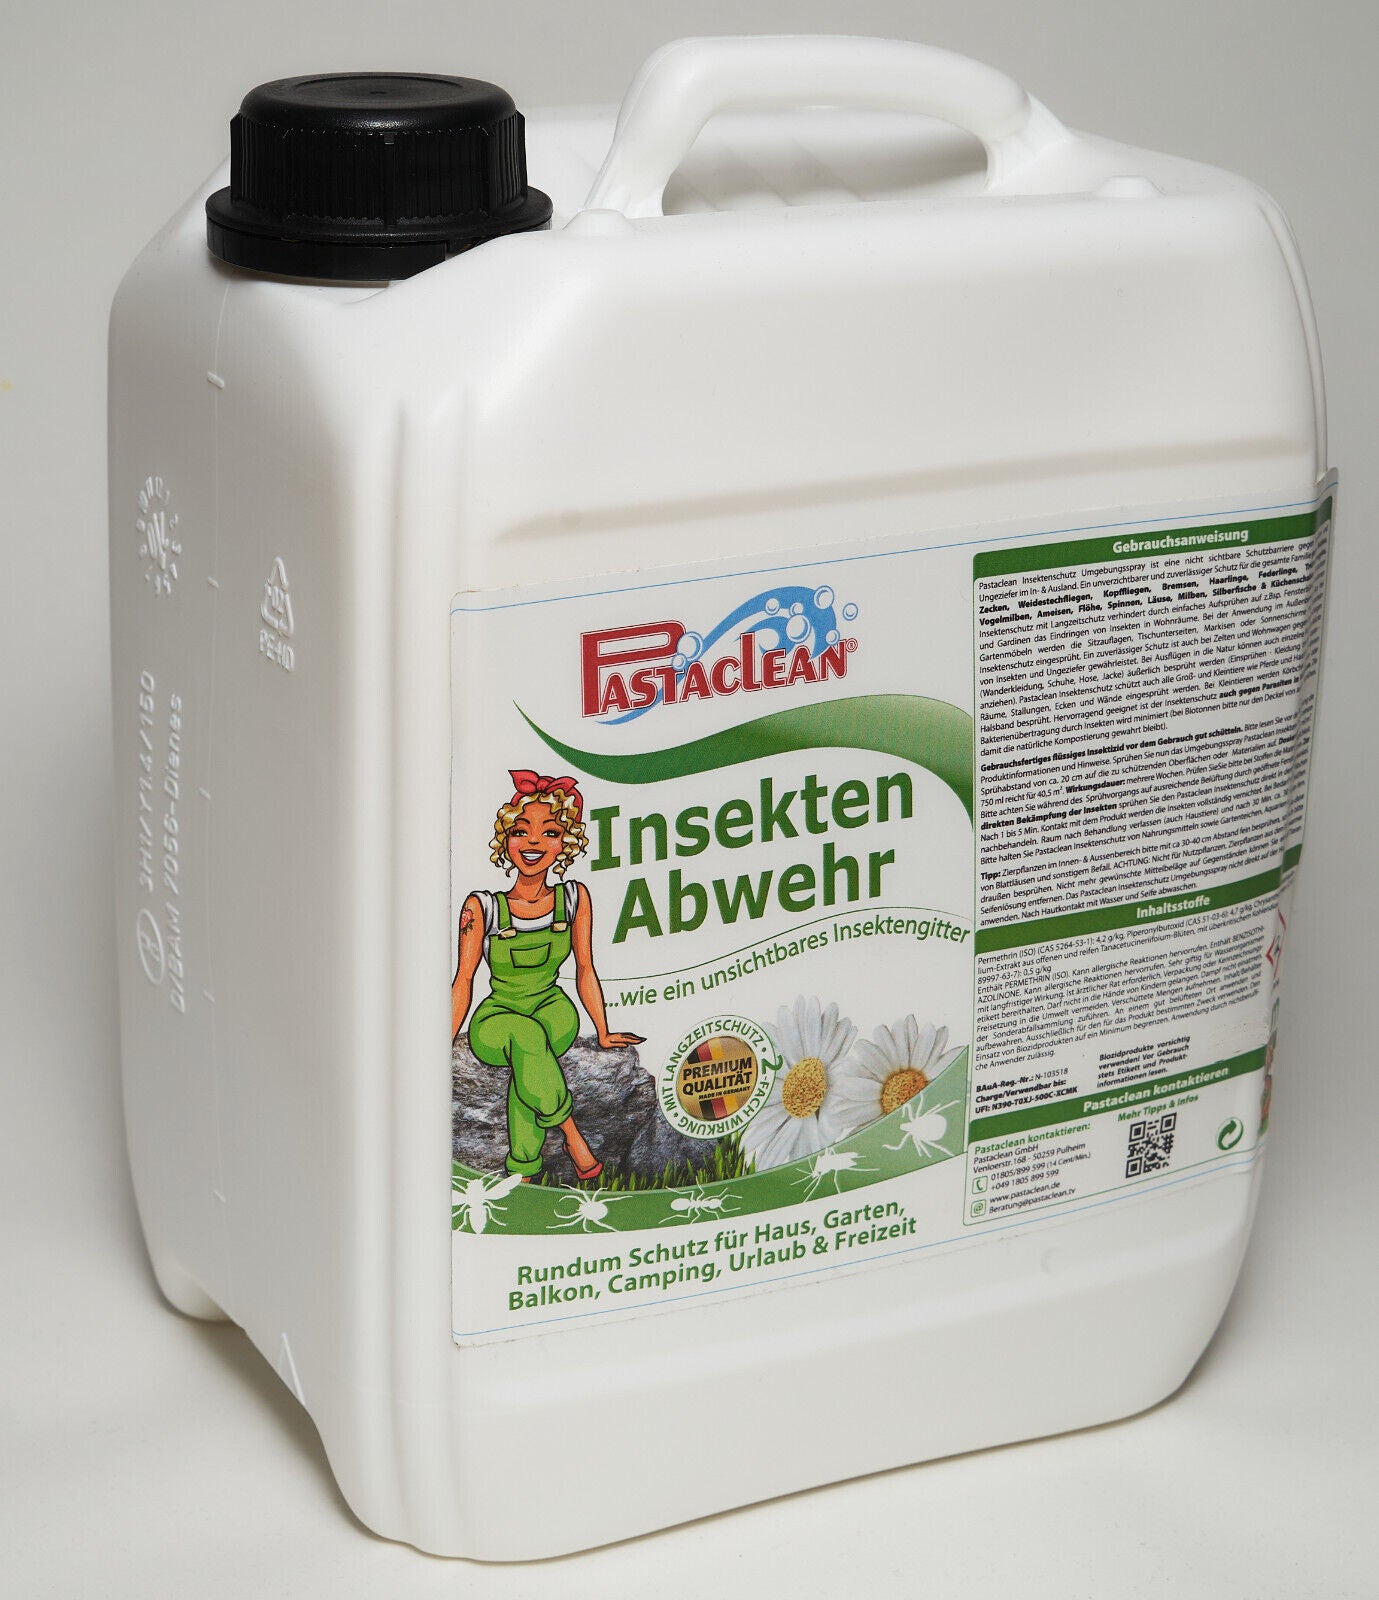 Pastaclean Insekten Abwehr - Jetzt im 5 Liter Vorratskanister! –  Blitzblank-Shop